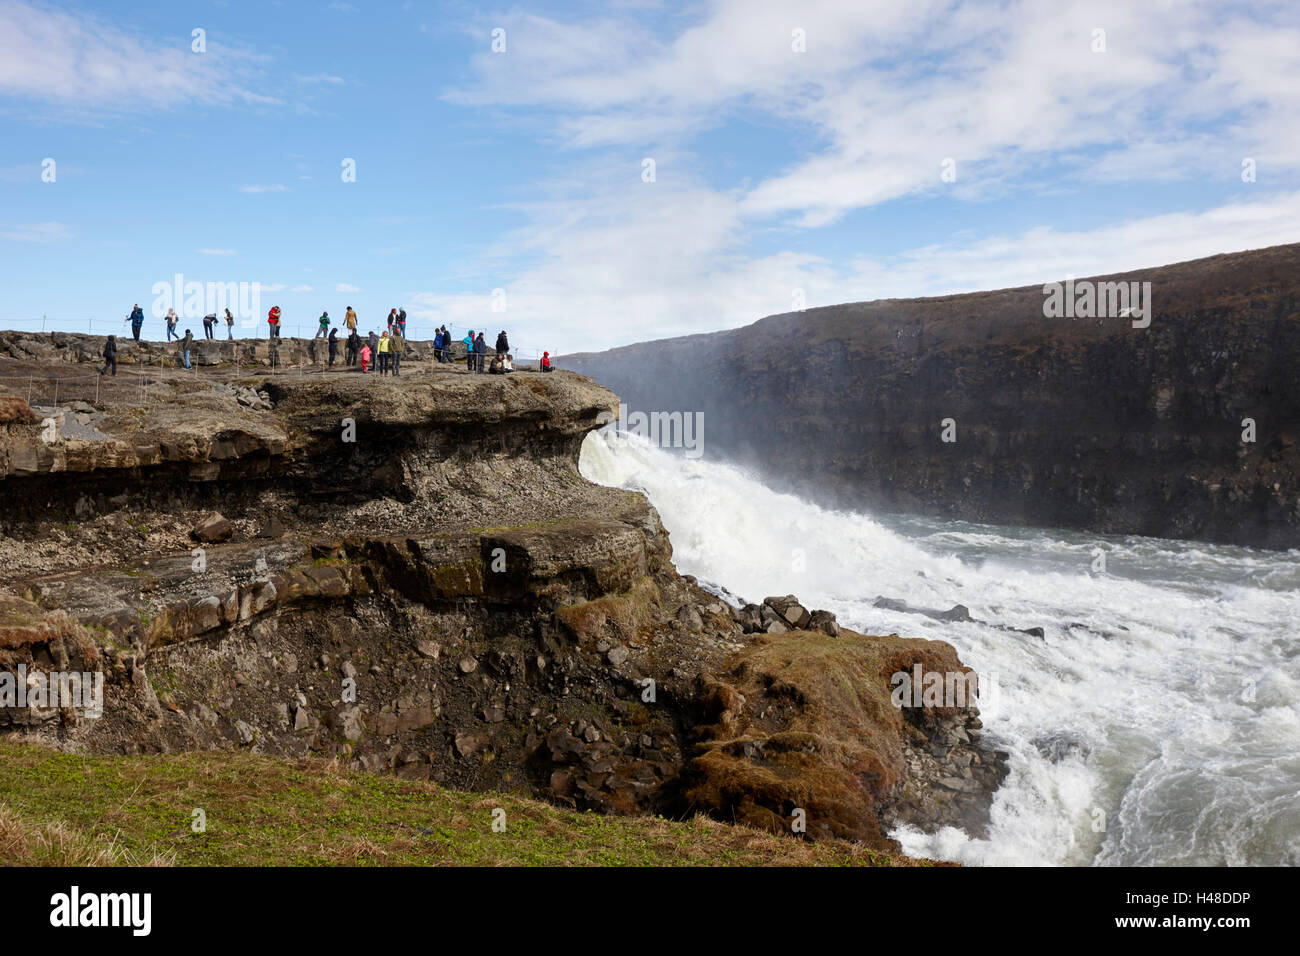 Les touristes sur la plate-forme de roche surplombant la cascade de Gullfoss dans le cercle d'or l'Islande Banque D'Images